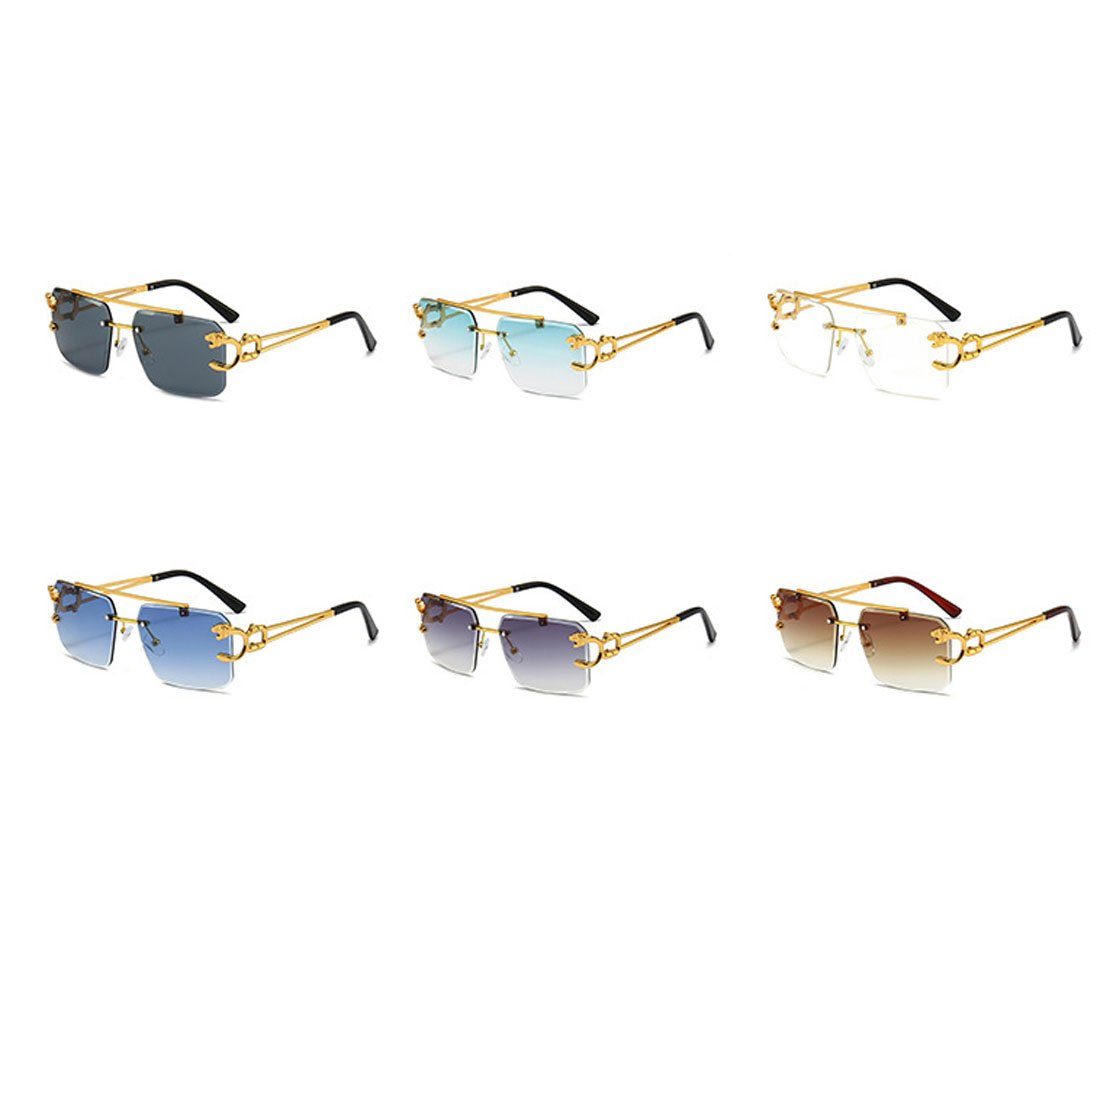 DÖRÖY für Sonnenbrille Rand, Herren-Sonnenbrille draußen Schwarz Damen-Retro-Sonnenbrille ohne